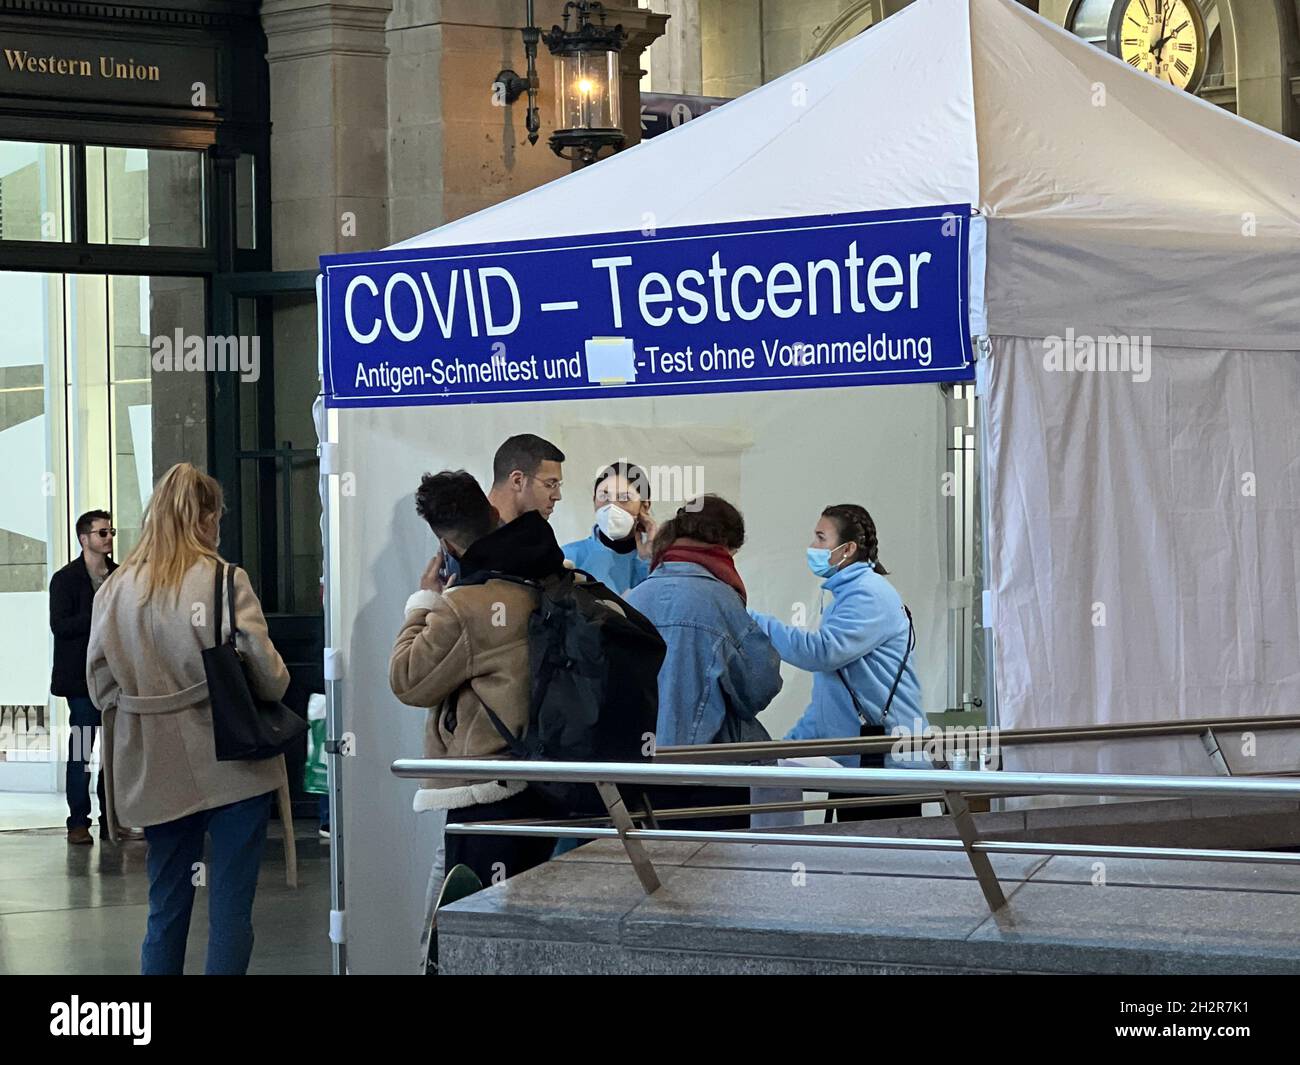 Centre d'essais Covid sur la gare principale de Zurich.L'inscription en allemand indique qu'aucun rendez-vous n'est nécessaire pour le test d'antigène de vitesse.Personnes en file d'attente. Banque D'Images